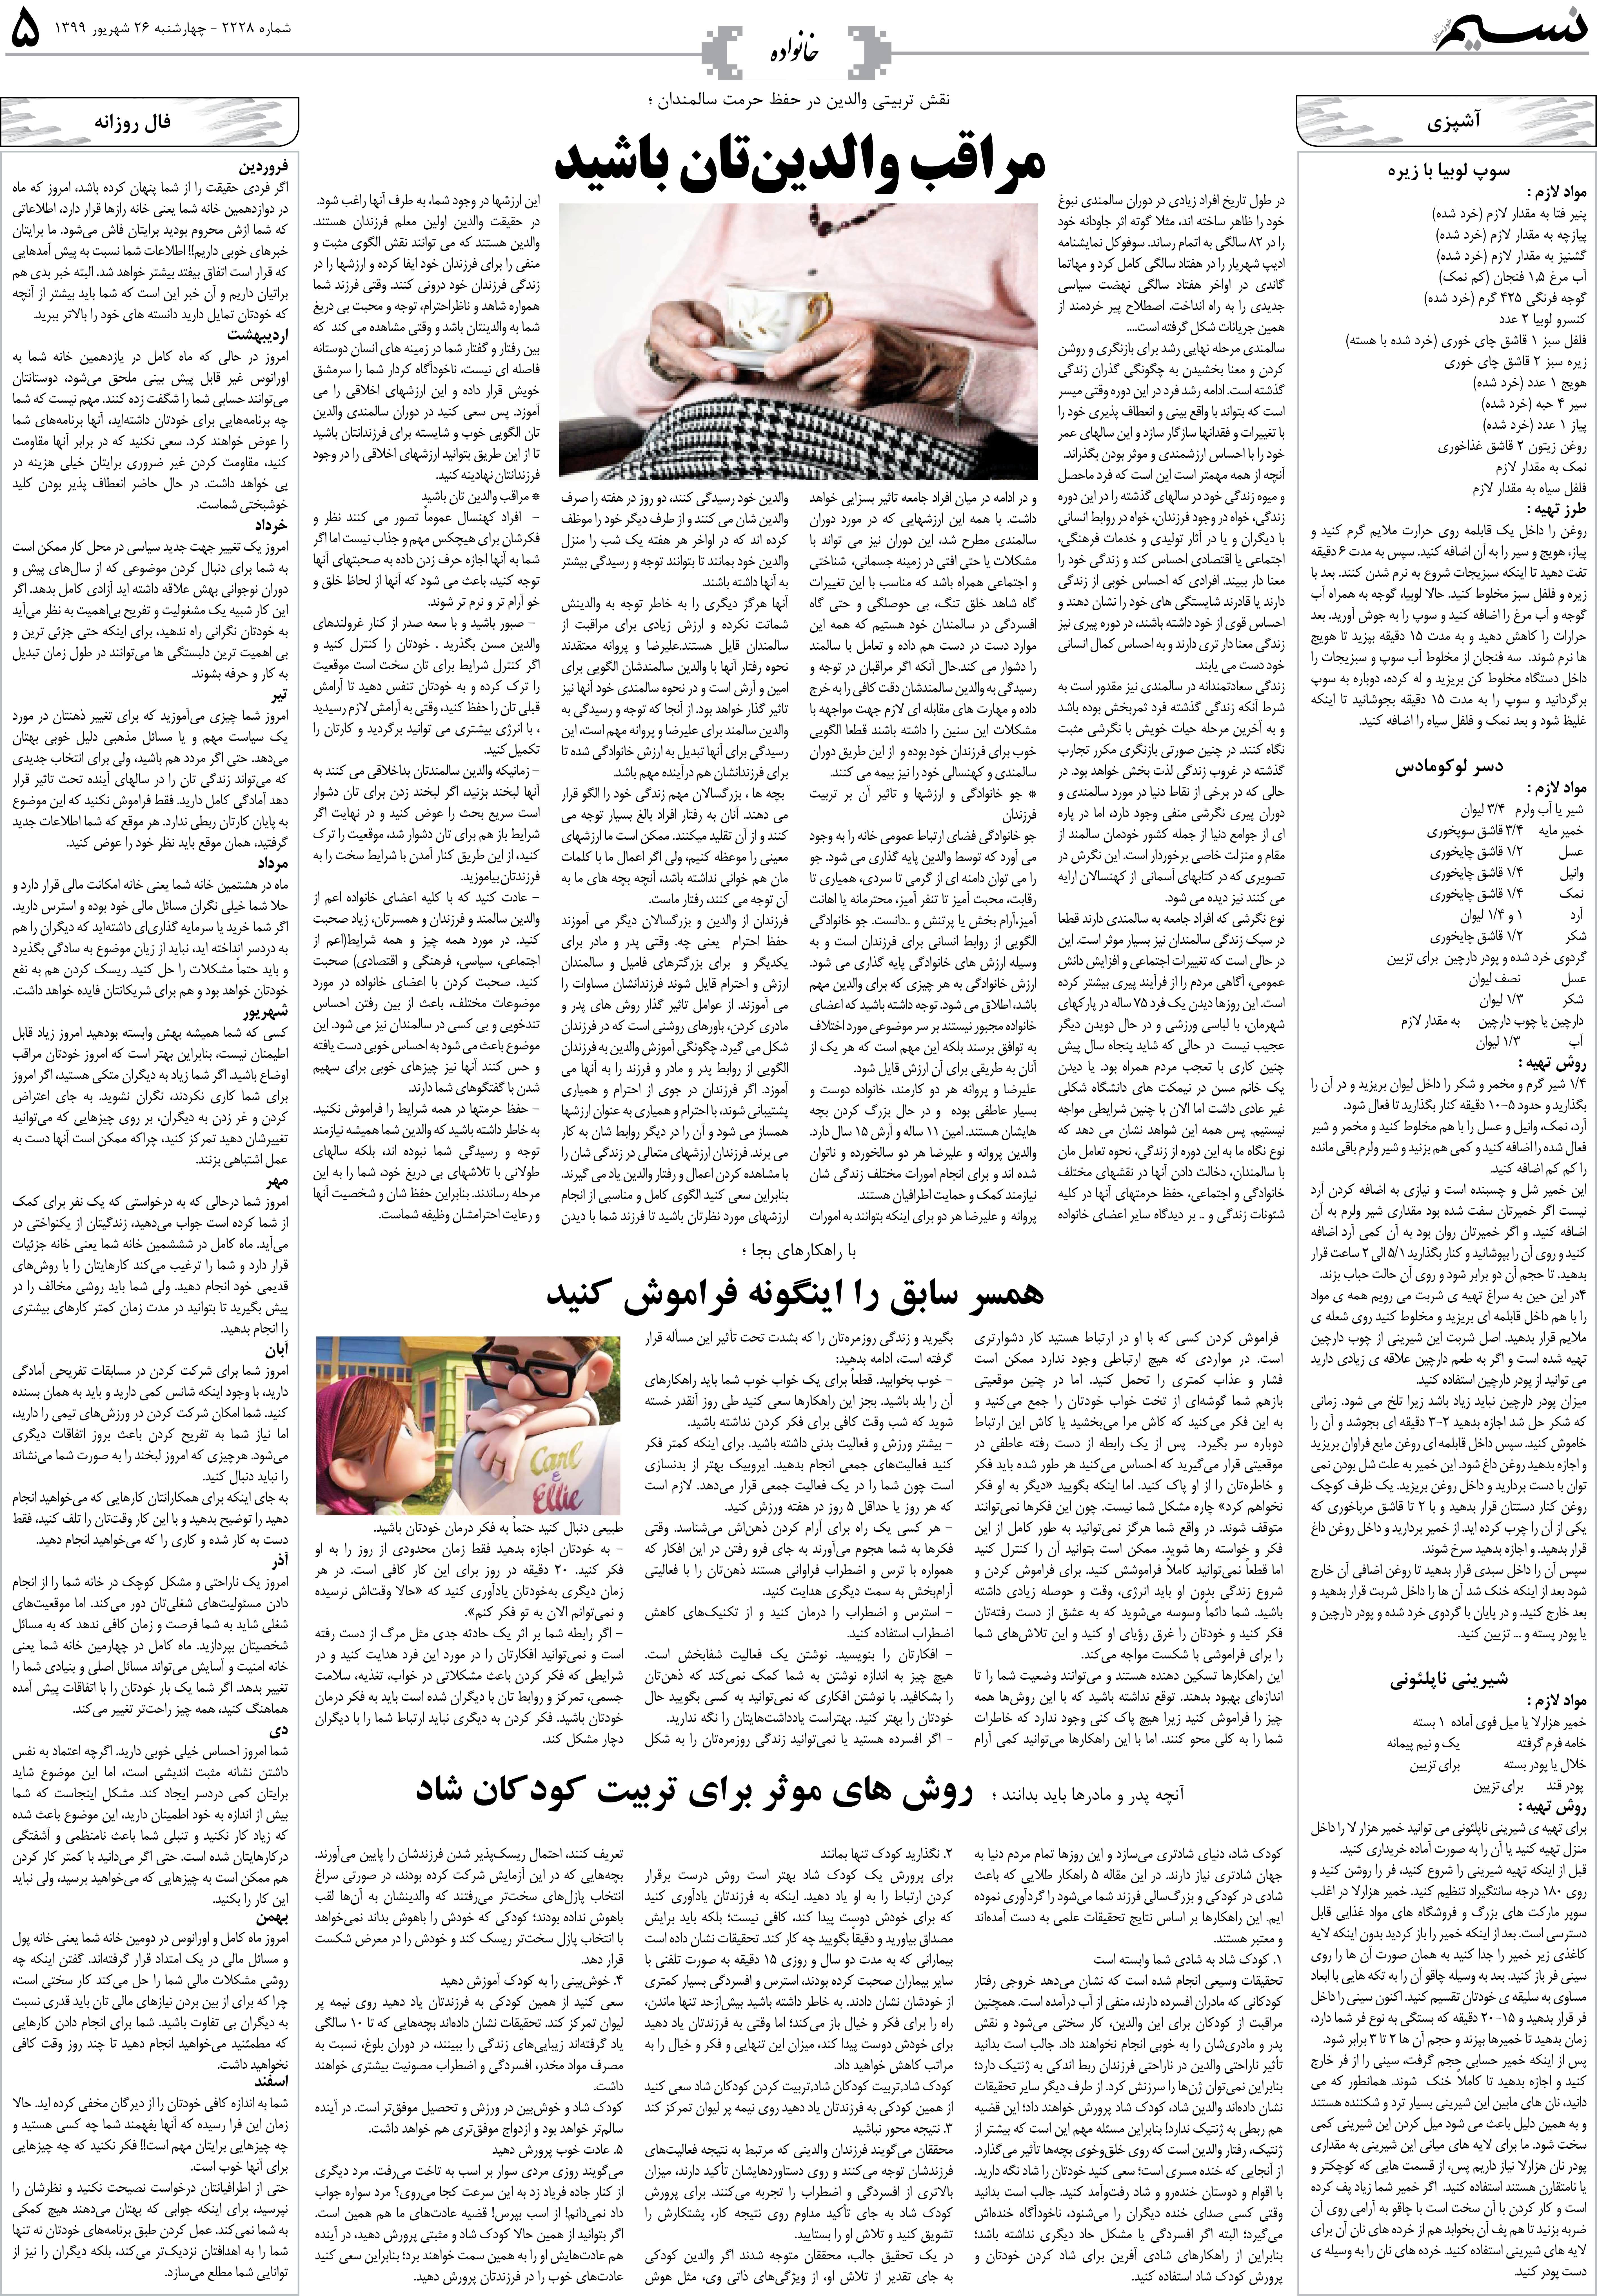 صفحه خانواده روزنامه نسیم شماره 2228